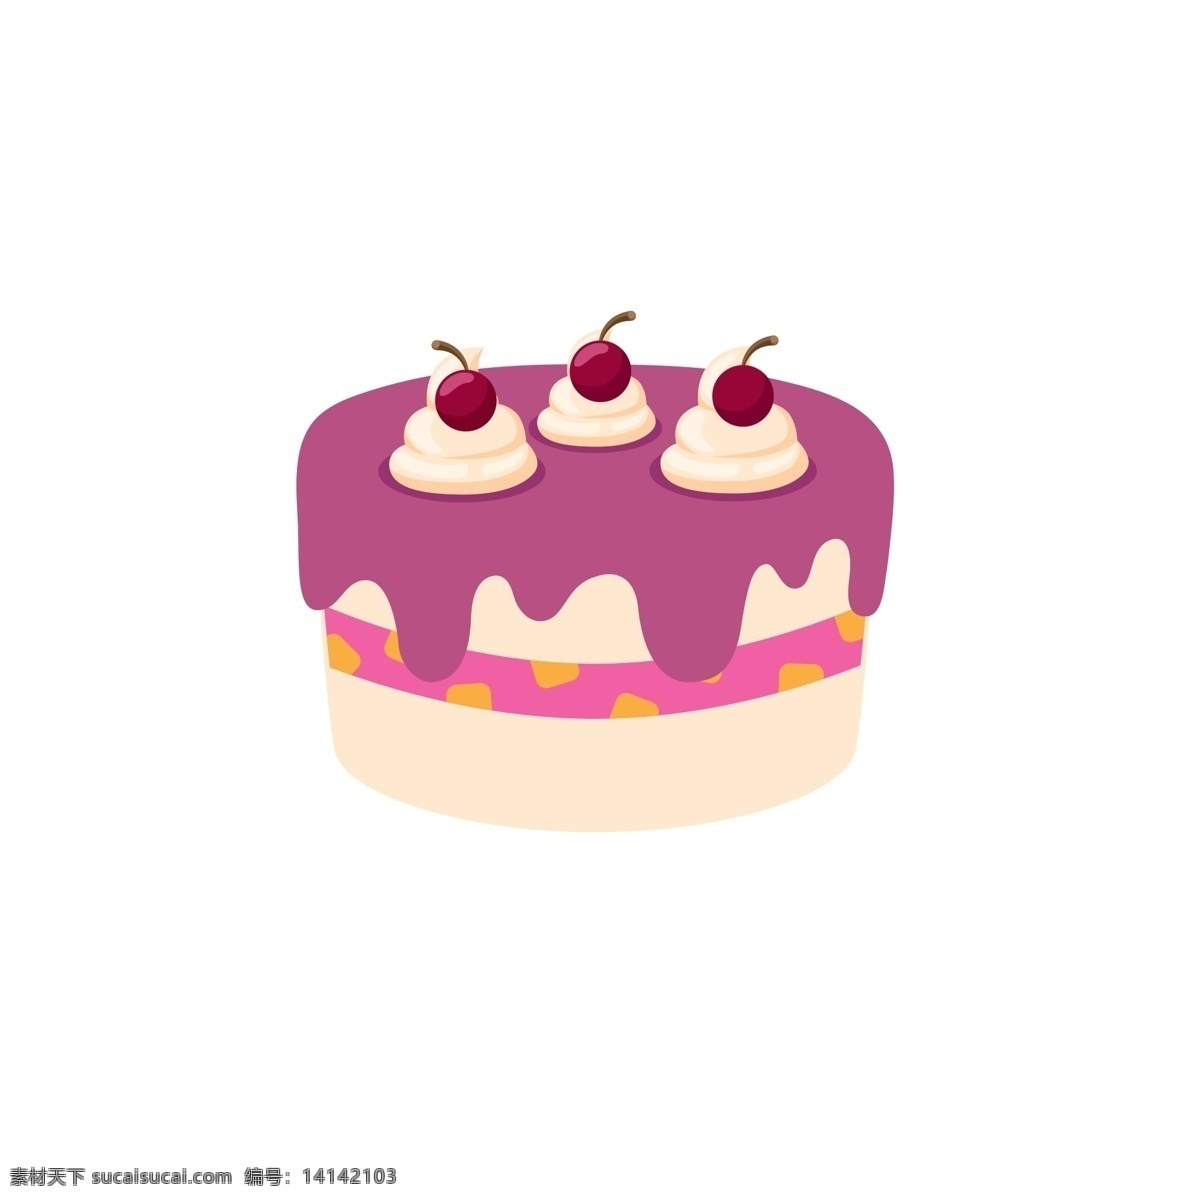 生日蛋糕 鲜奶 多层 得志 甜 樱桃 儿童 点心 奶油 红色 水果